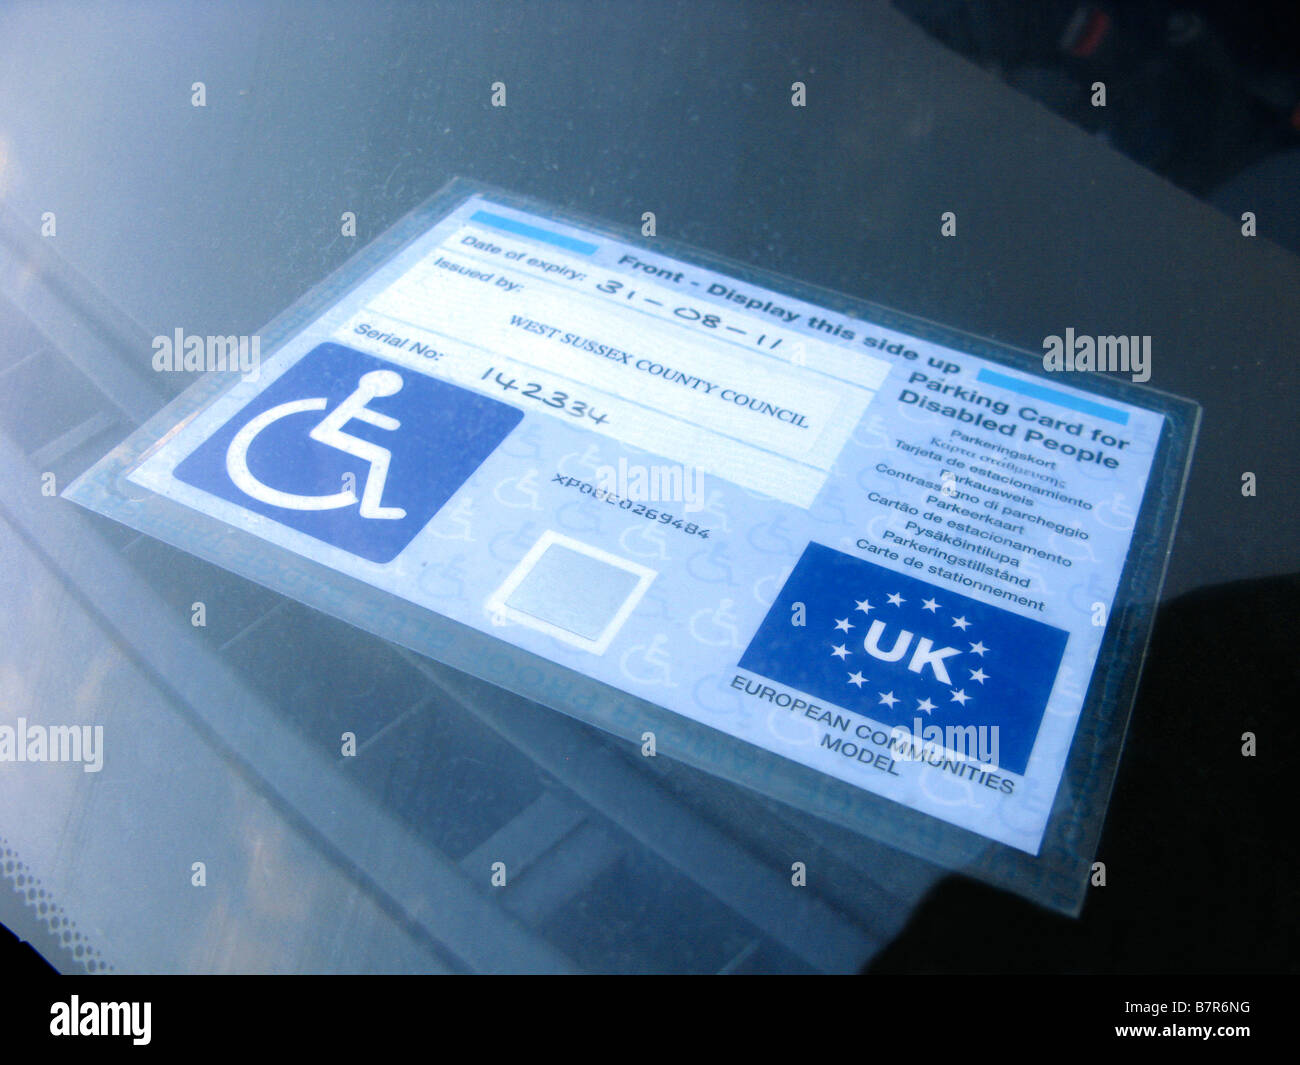 Parkausweis für behinderte Menschen, bekannt als einen Behindertenausweis  auf dem Armaturenbrett eines Autos Stockfotografie - Alamy